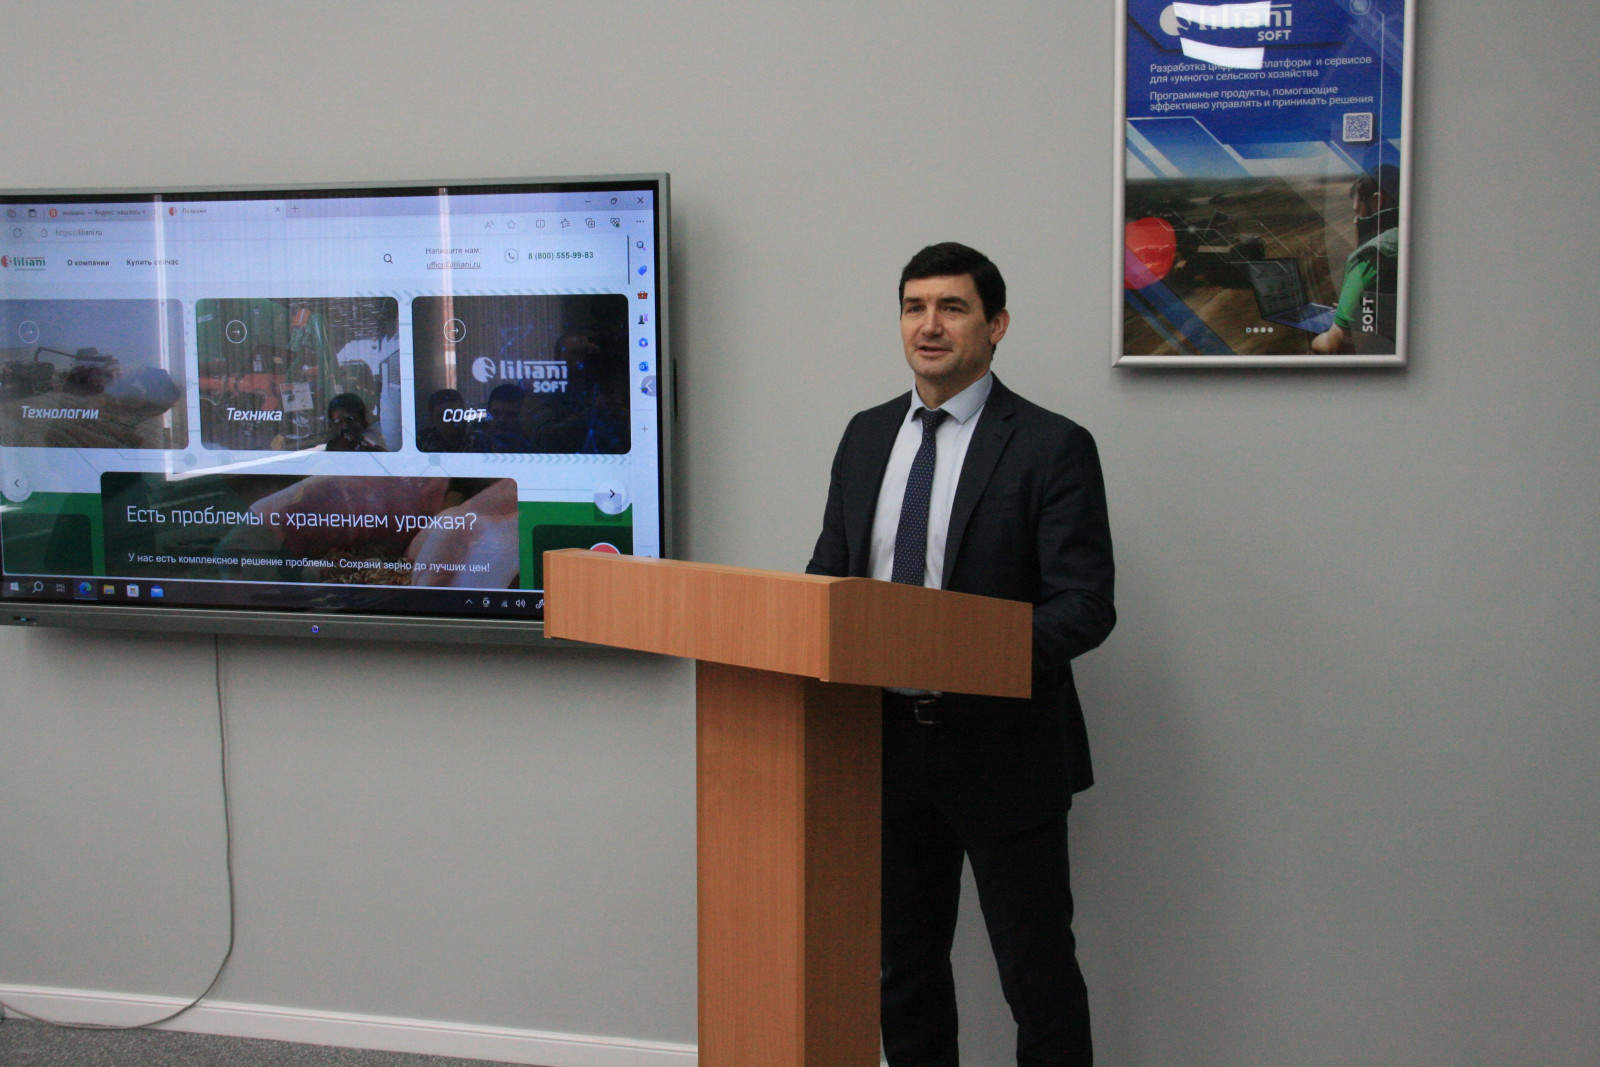 Новейшую мультимедийную аудиторию открыли в Азово-Черноморском инженерном вузе Зернограда